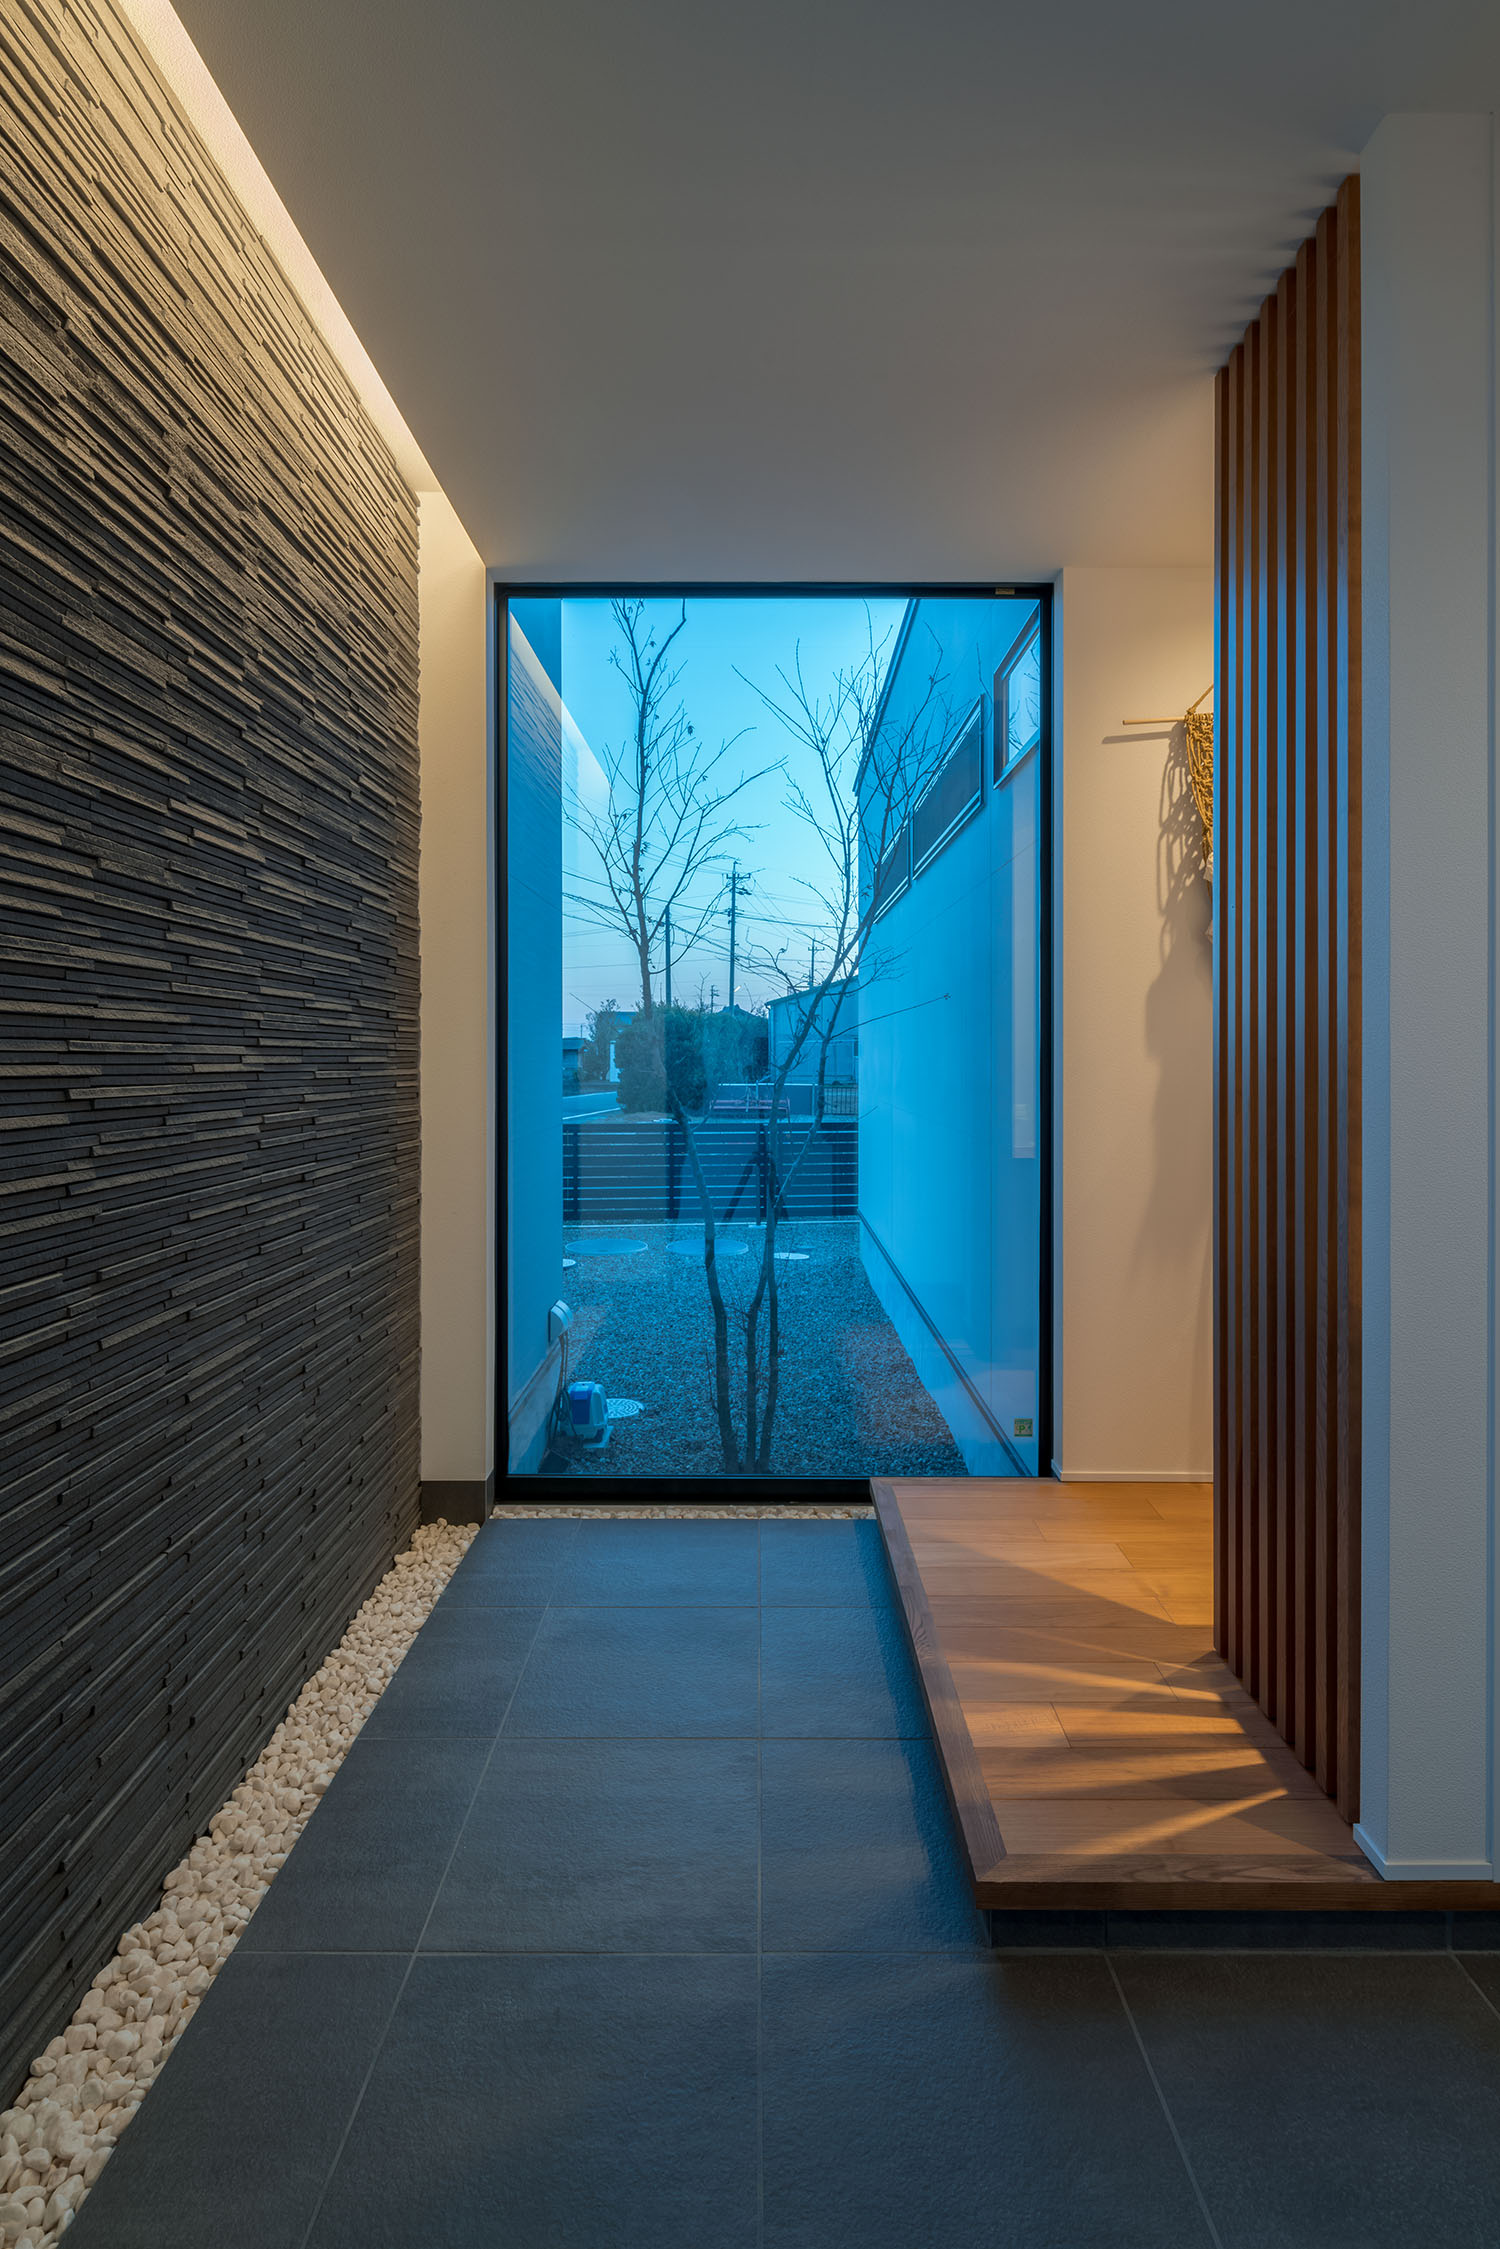 石の壁を照らすように間接照明が取り付けられた玄関・デザイン住宅